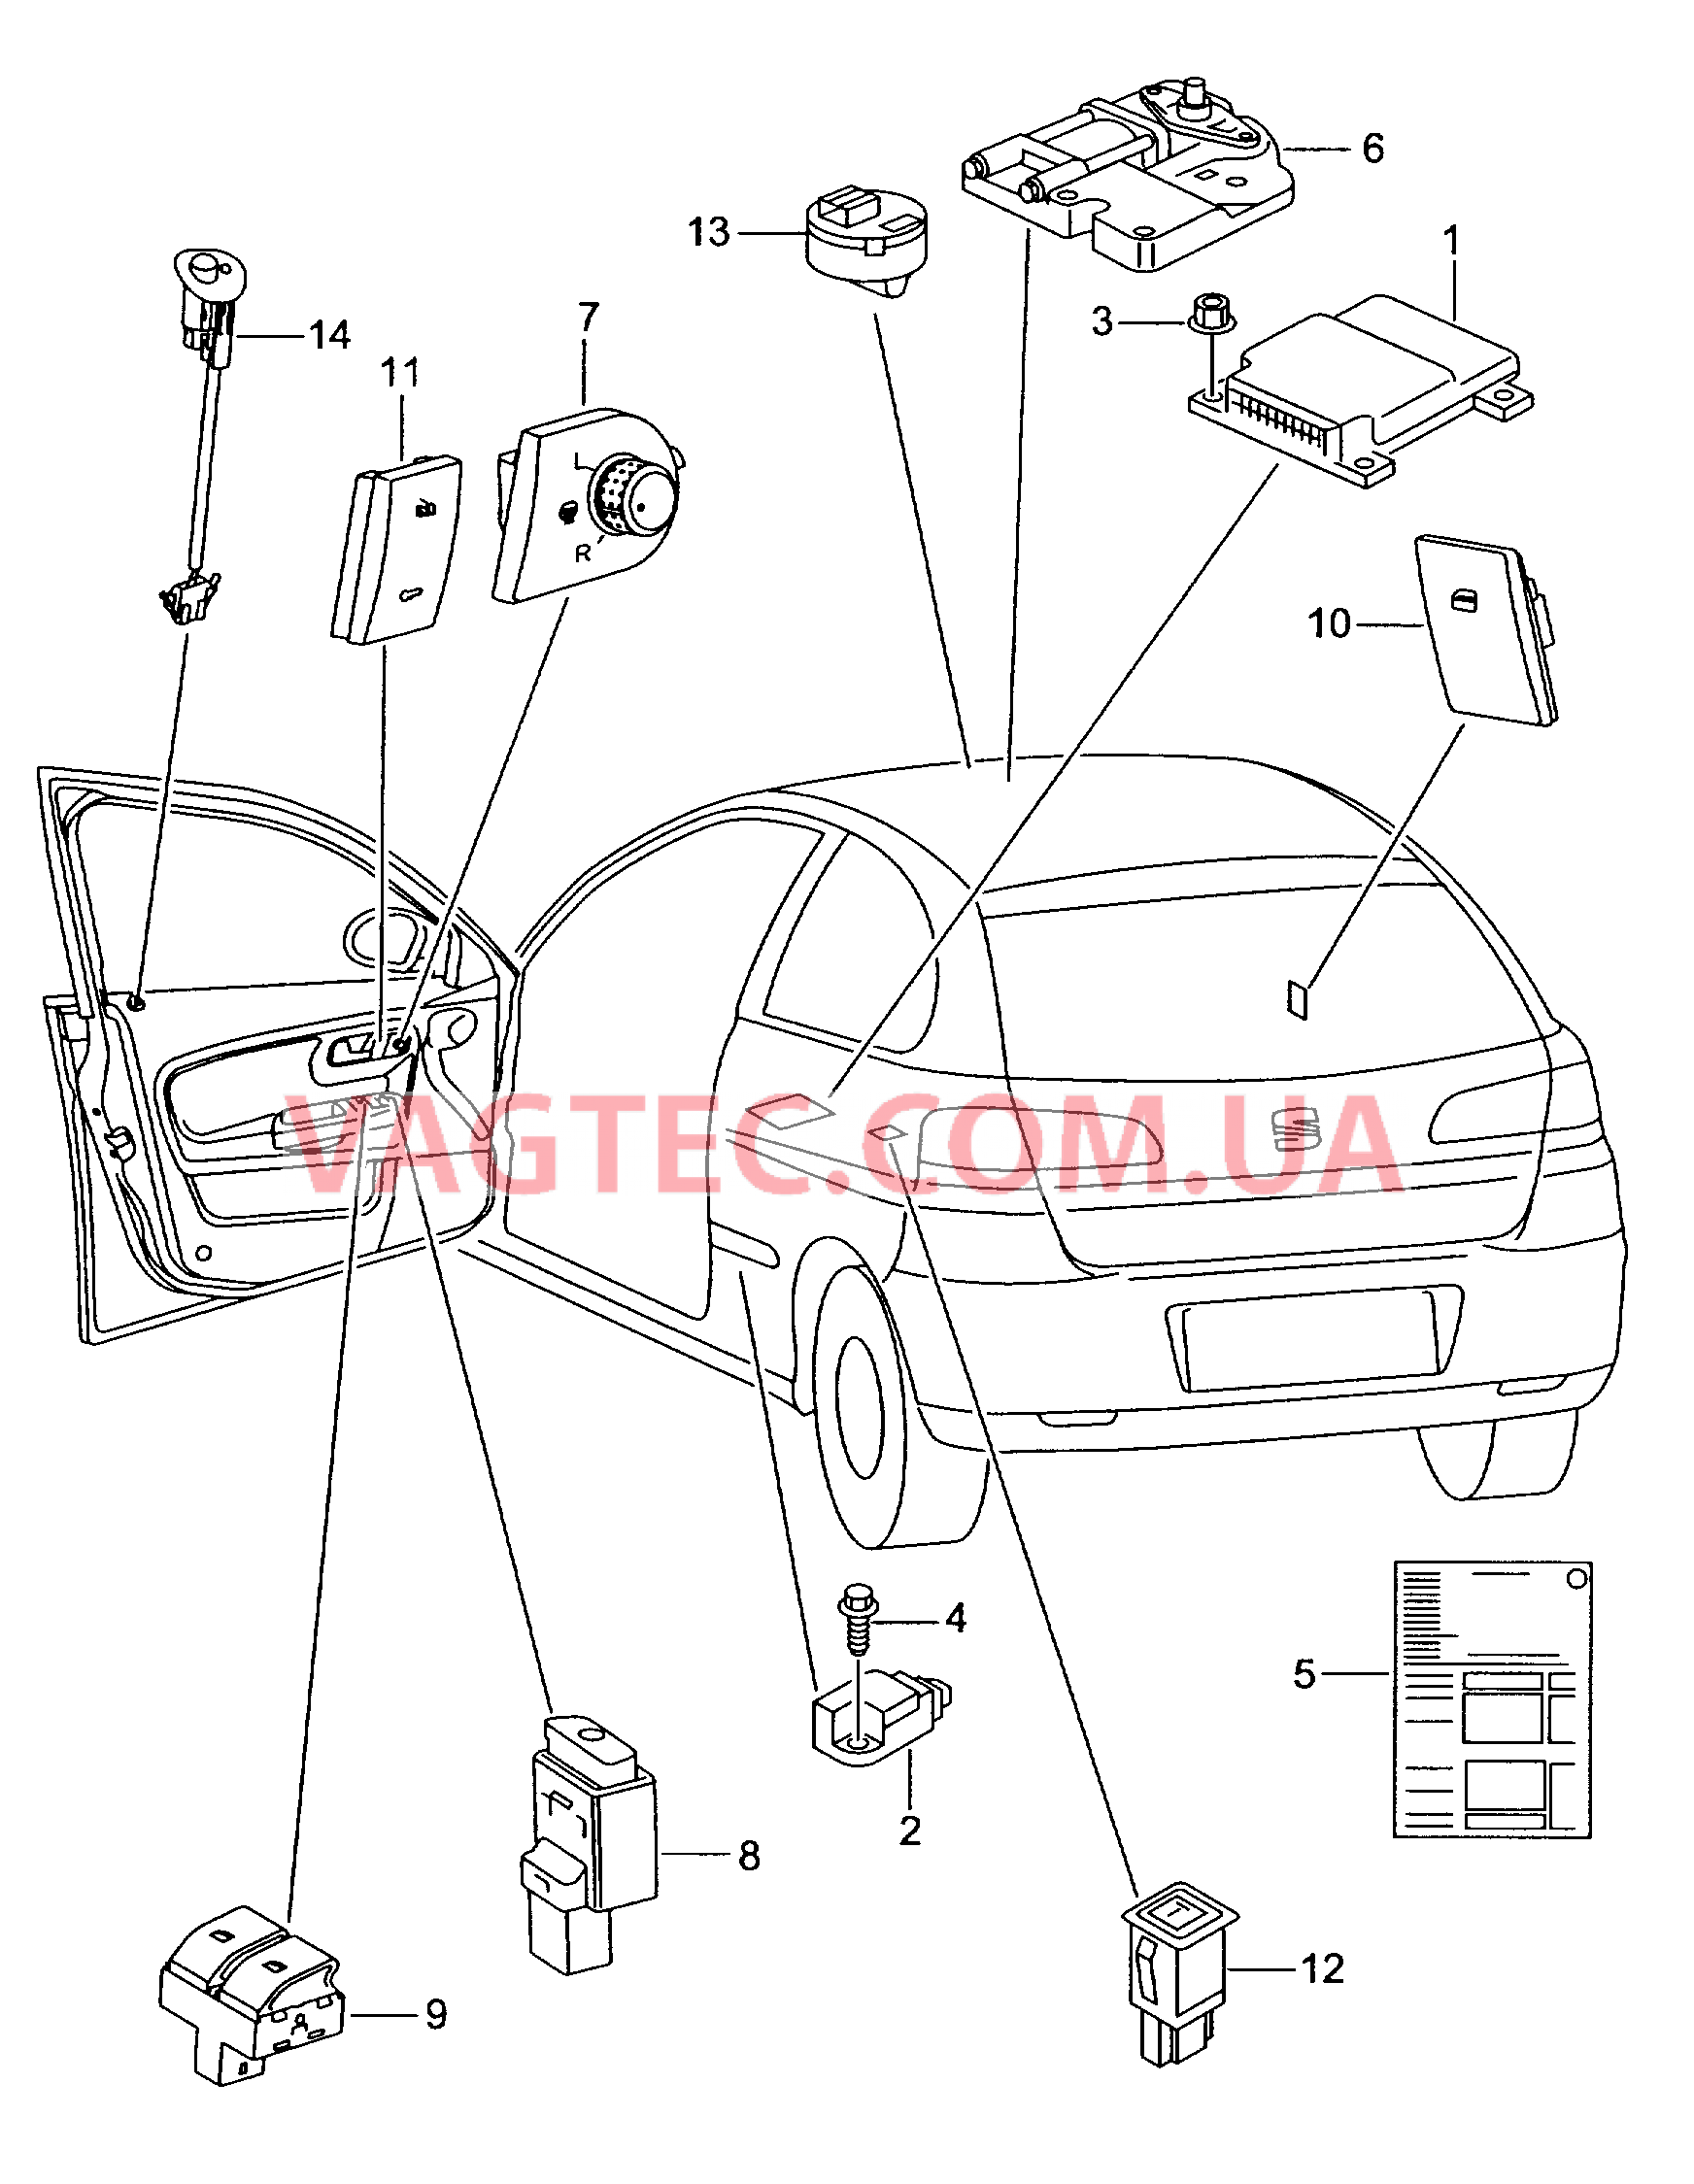 Электродетали для подуш.безоп. Мотор привода люка Выключатель в обивке двери Лампа, контрольная для противоугонной системы  для SEAT Ibiza 2004